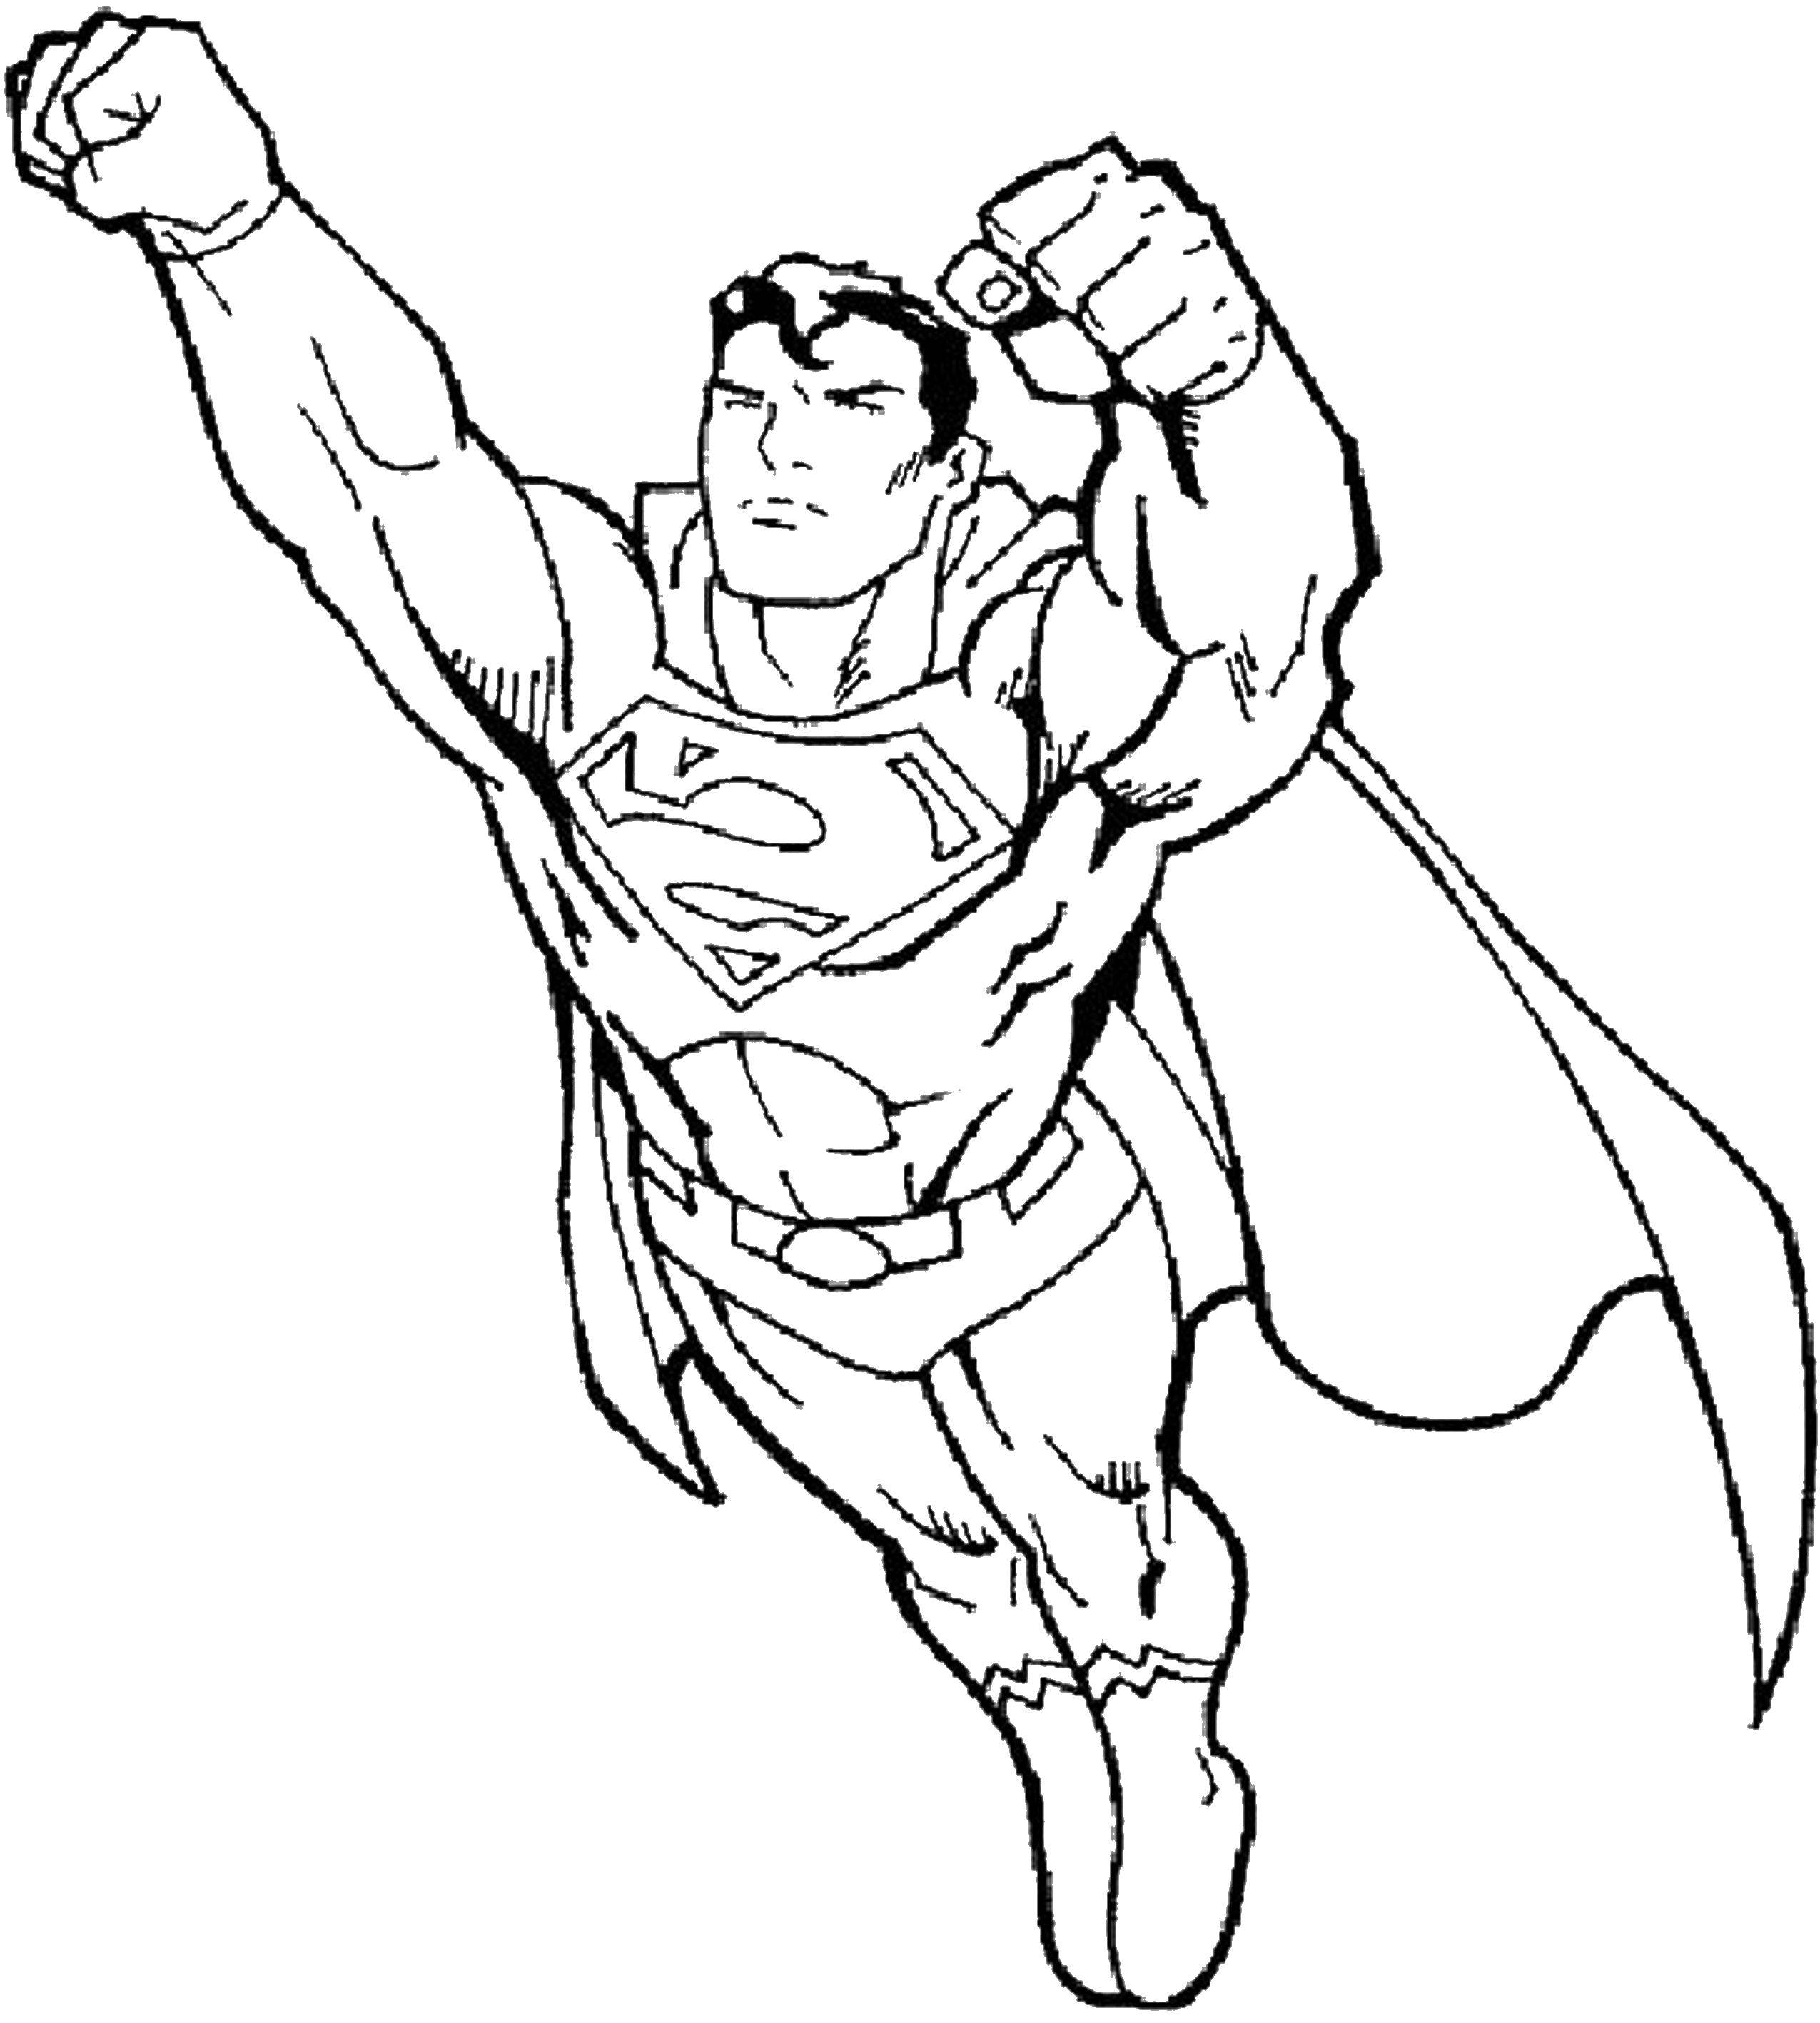 Название: Раскраска Супер человек. Категория: Для мальчиков. Теги: супергерои, супермен, супер человек.